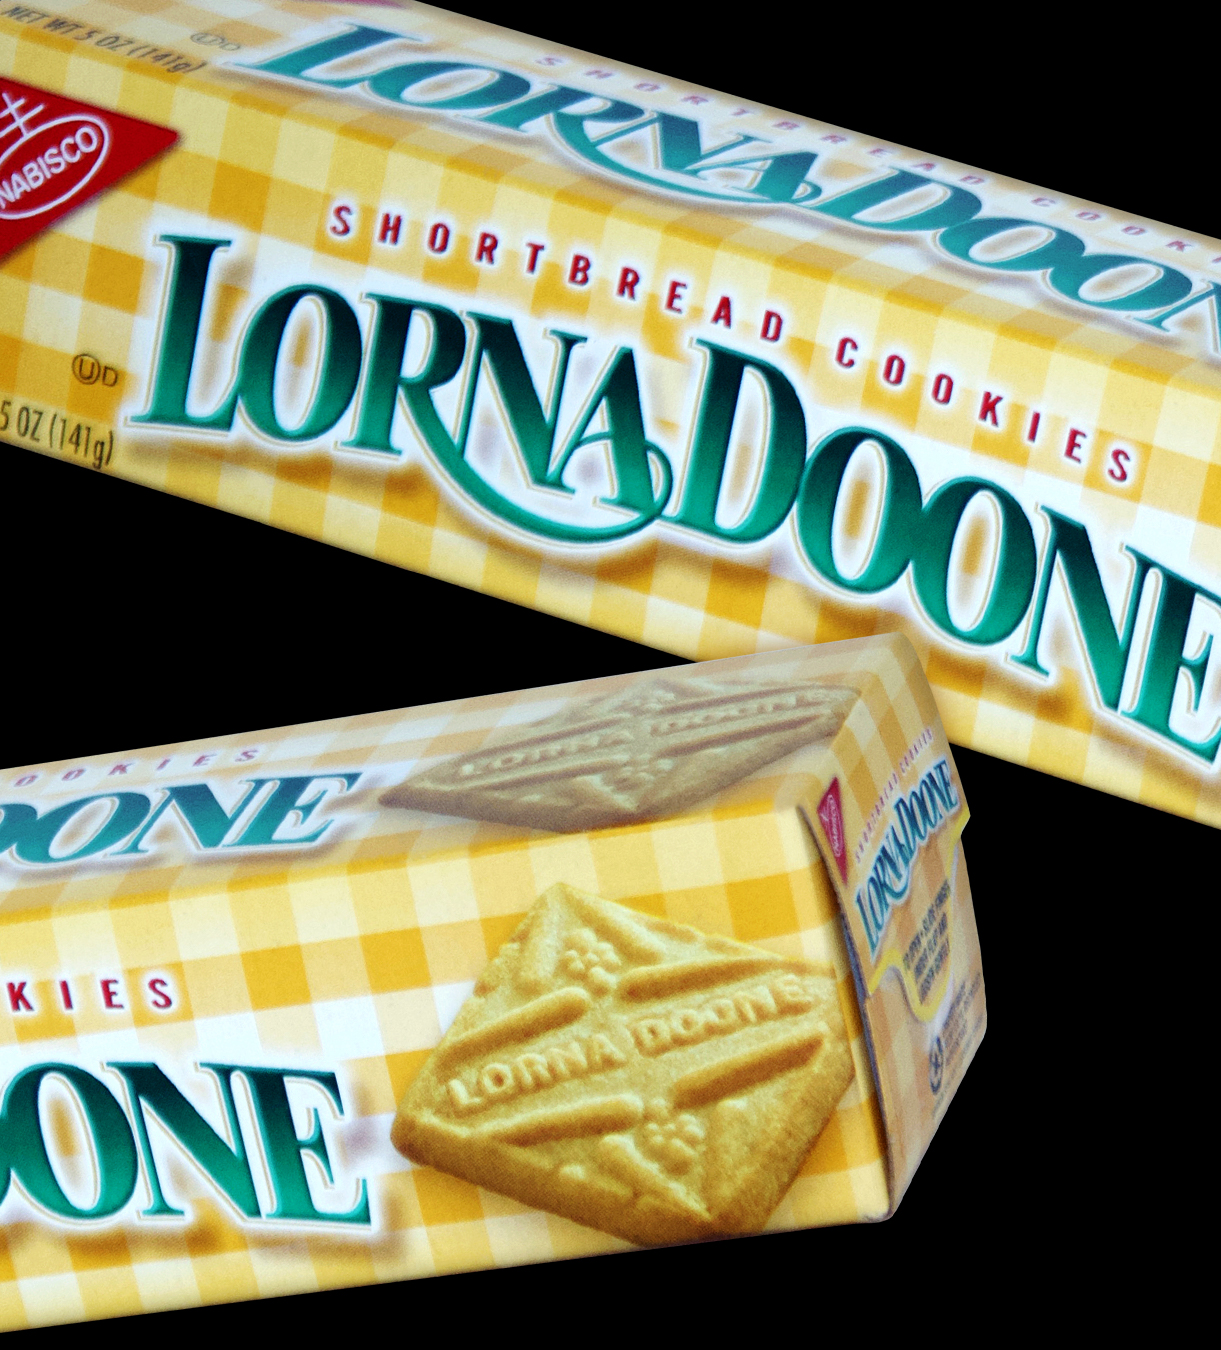 Package-image-of-LornaDoone-cookies